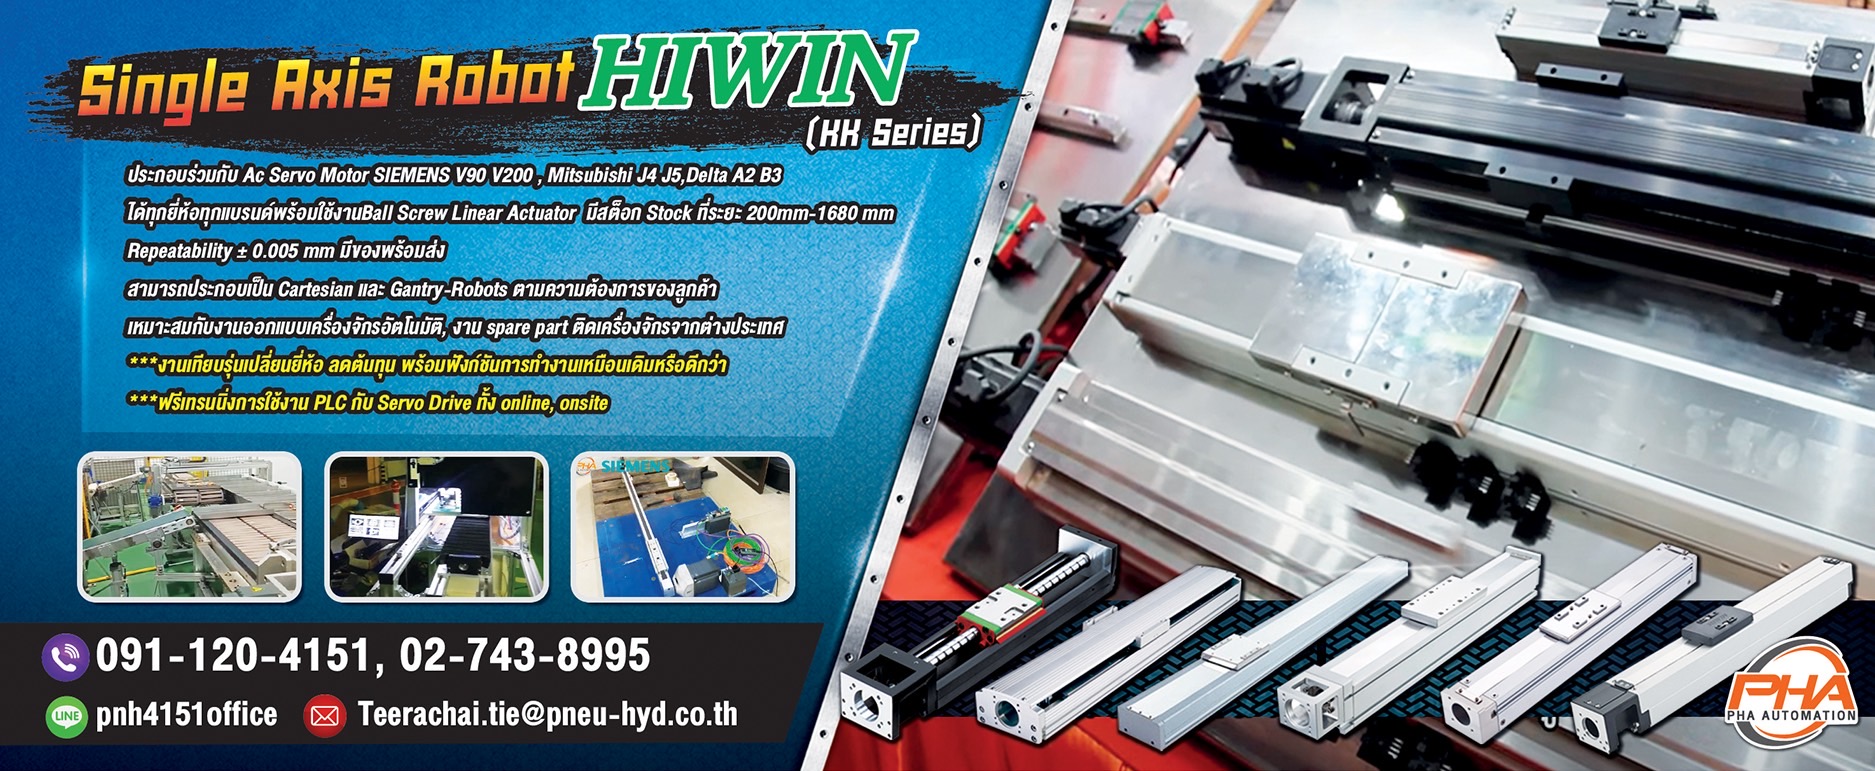 Hiwin Single Axis Robot